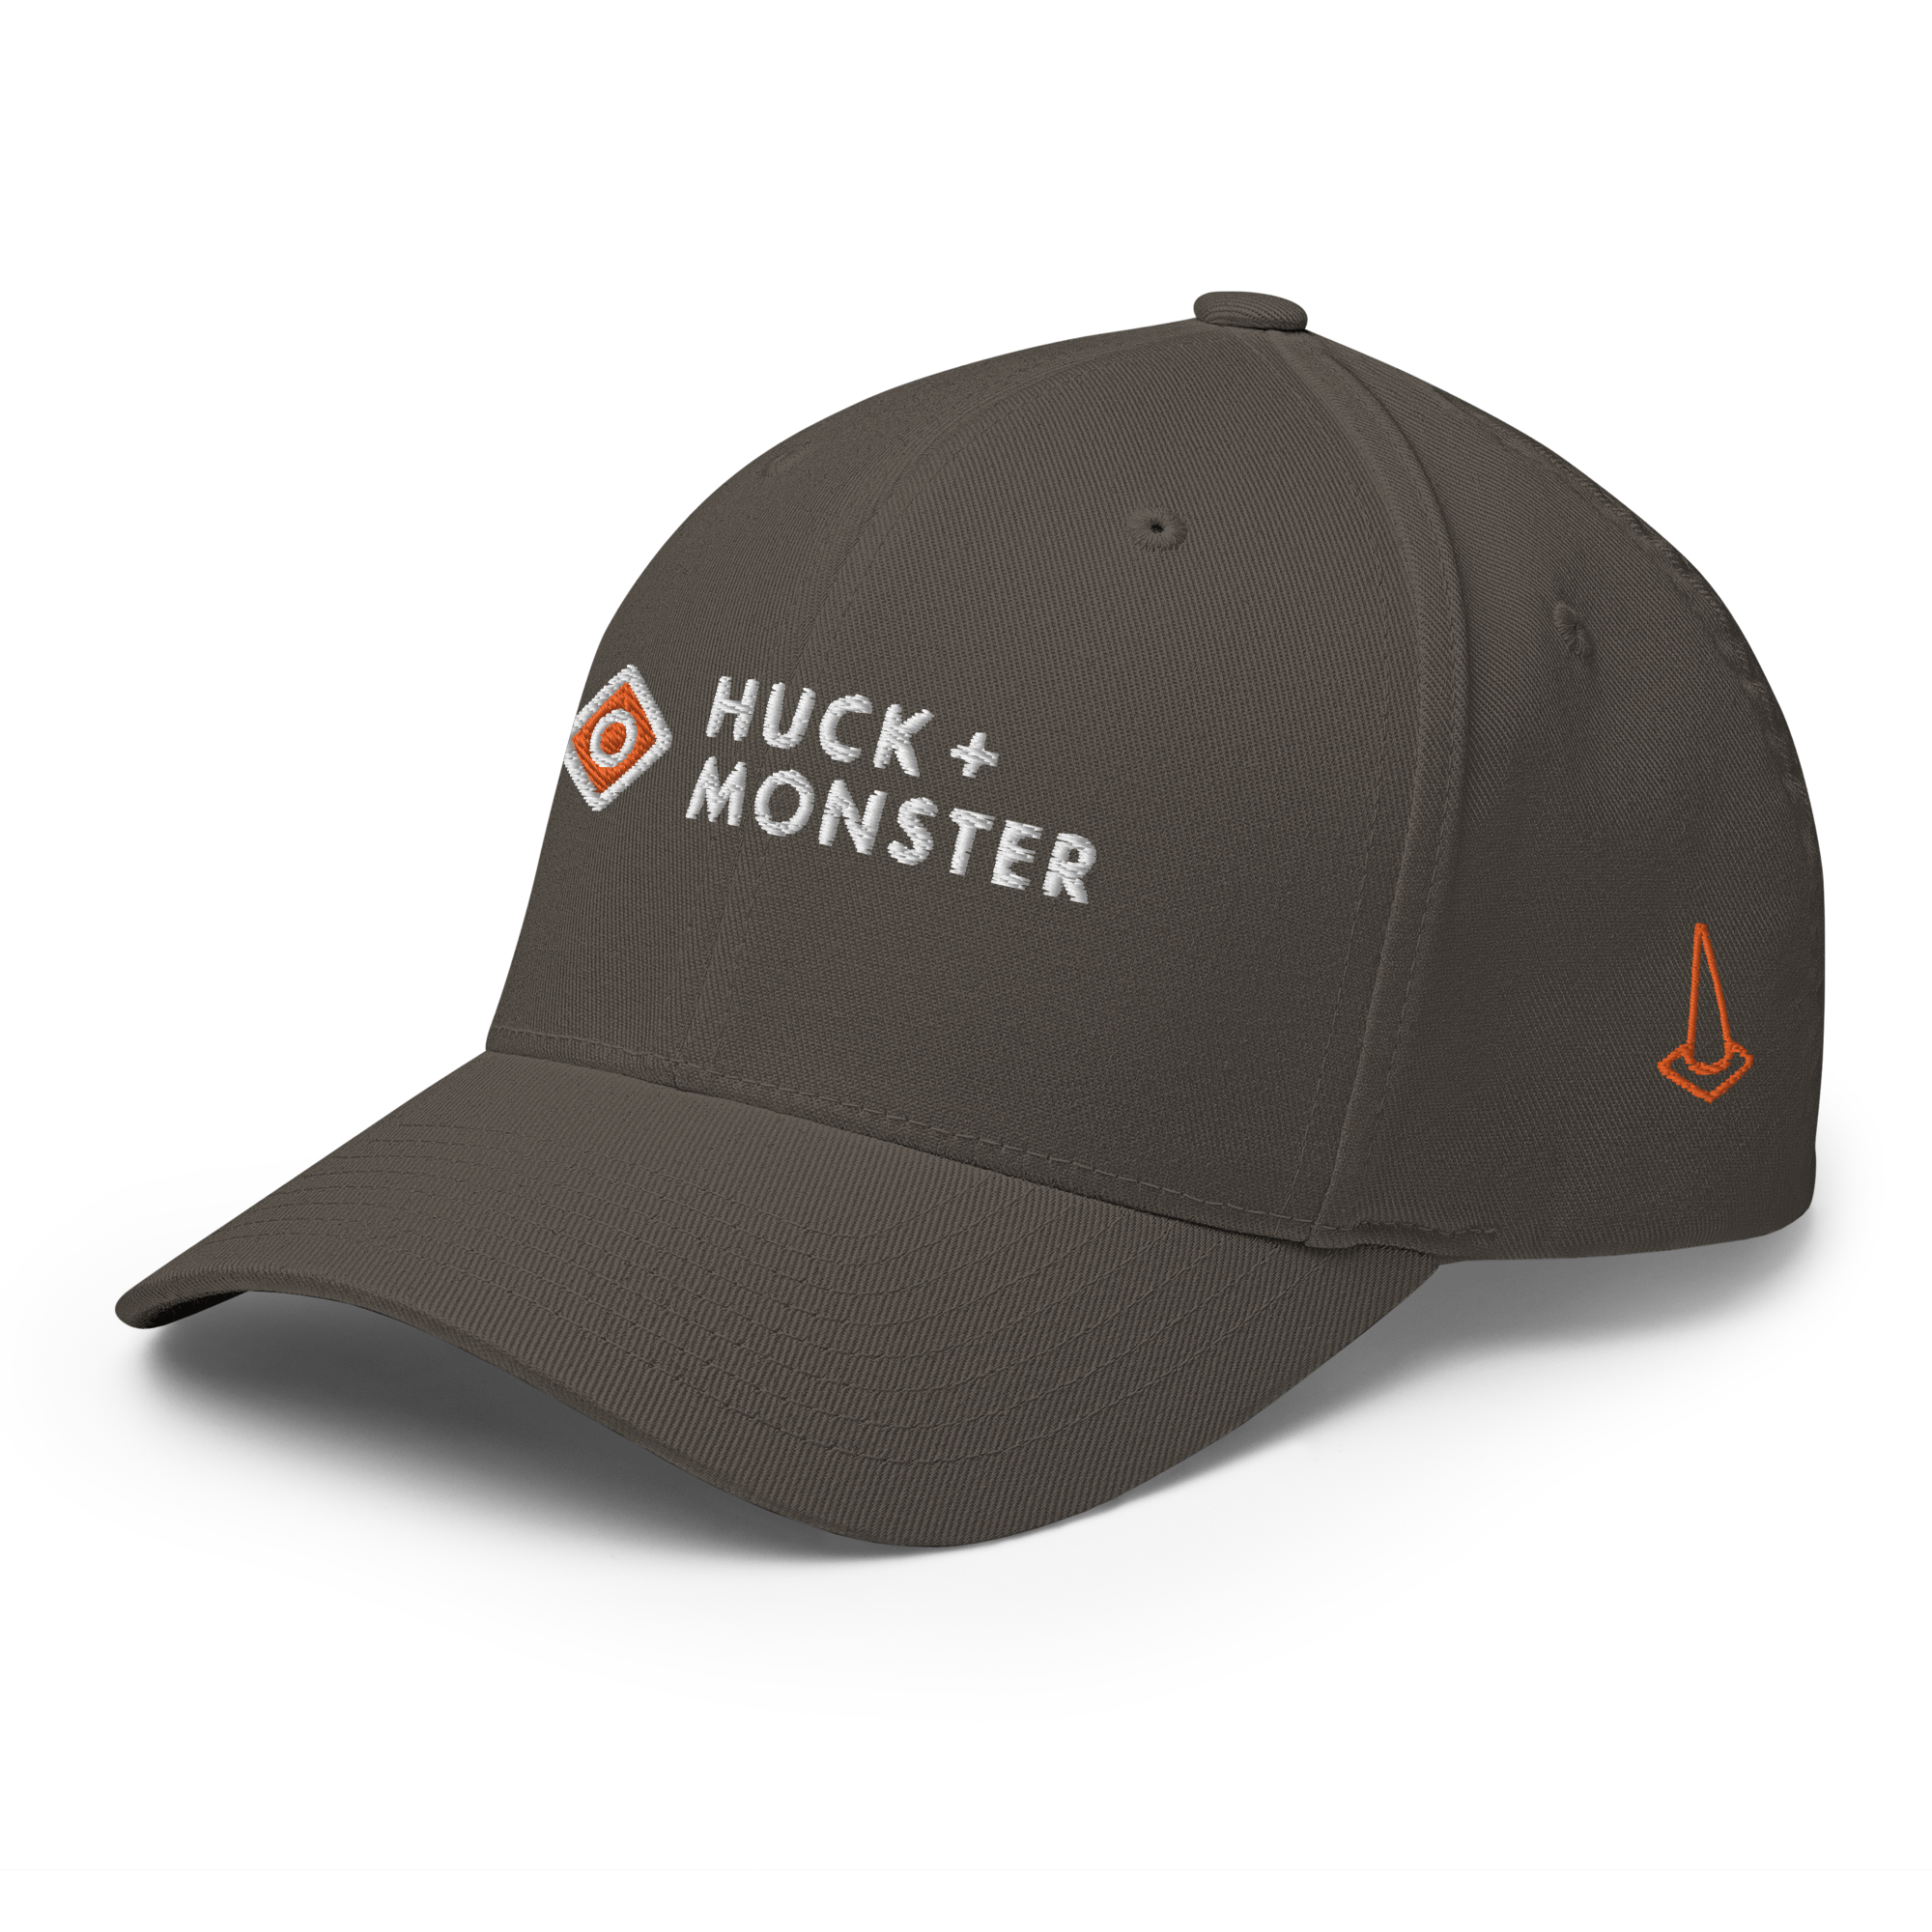 Player Huck Monster + Cap